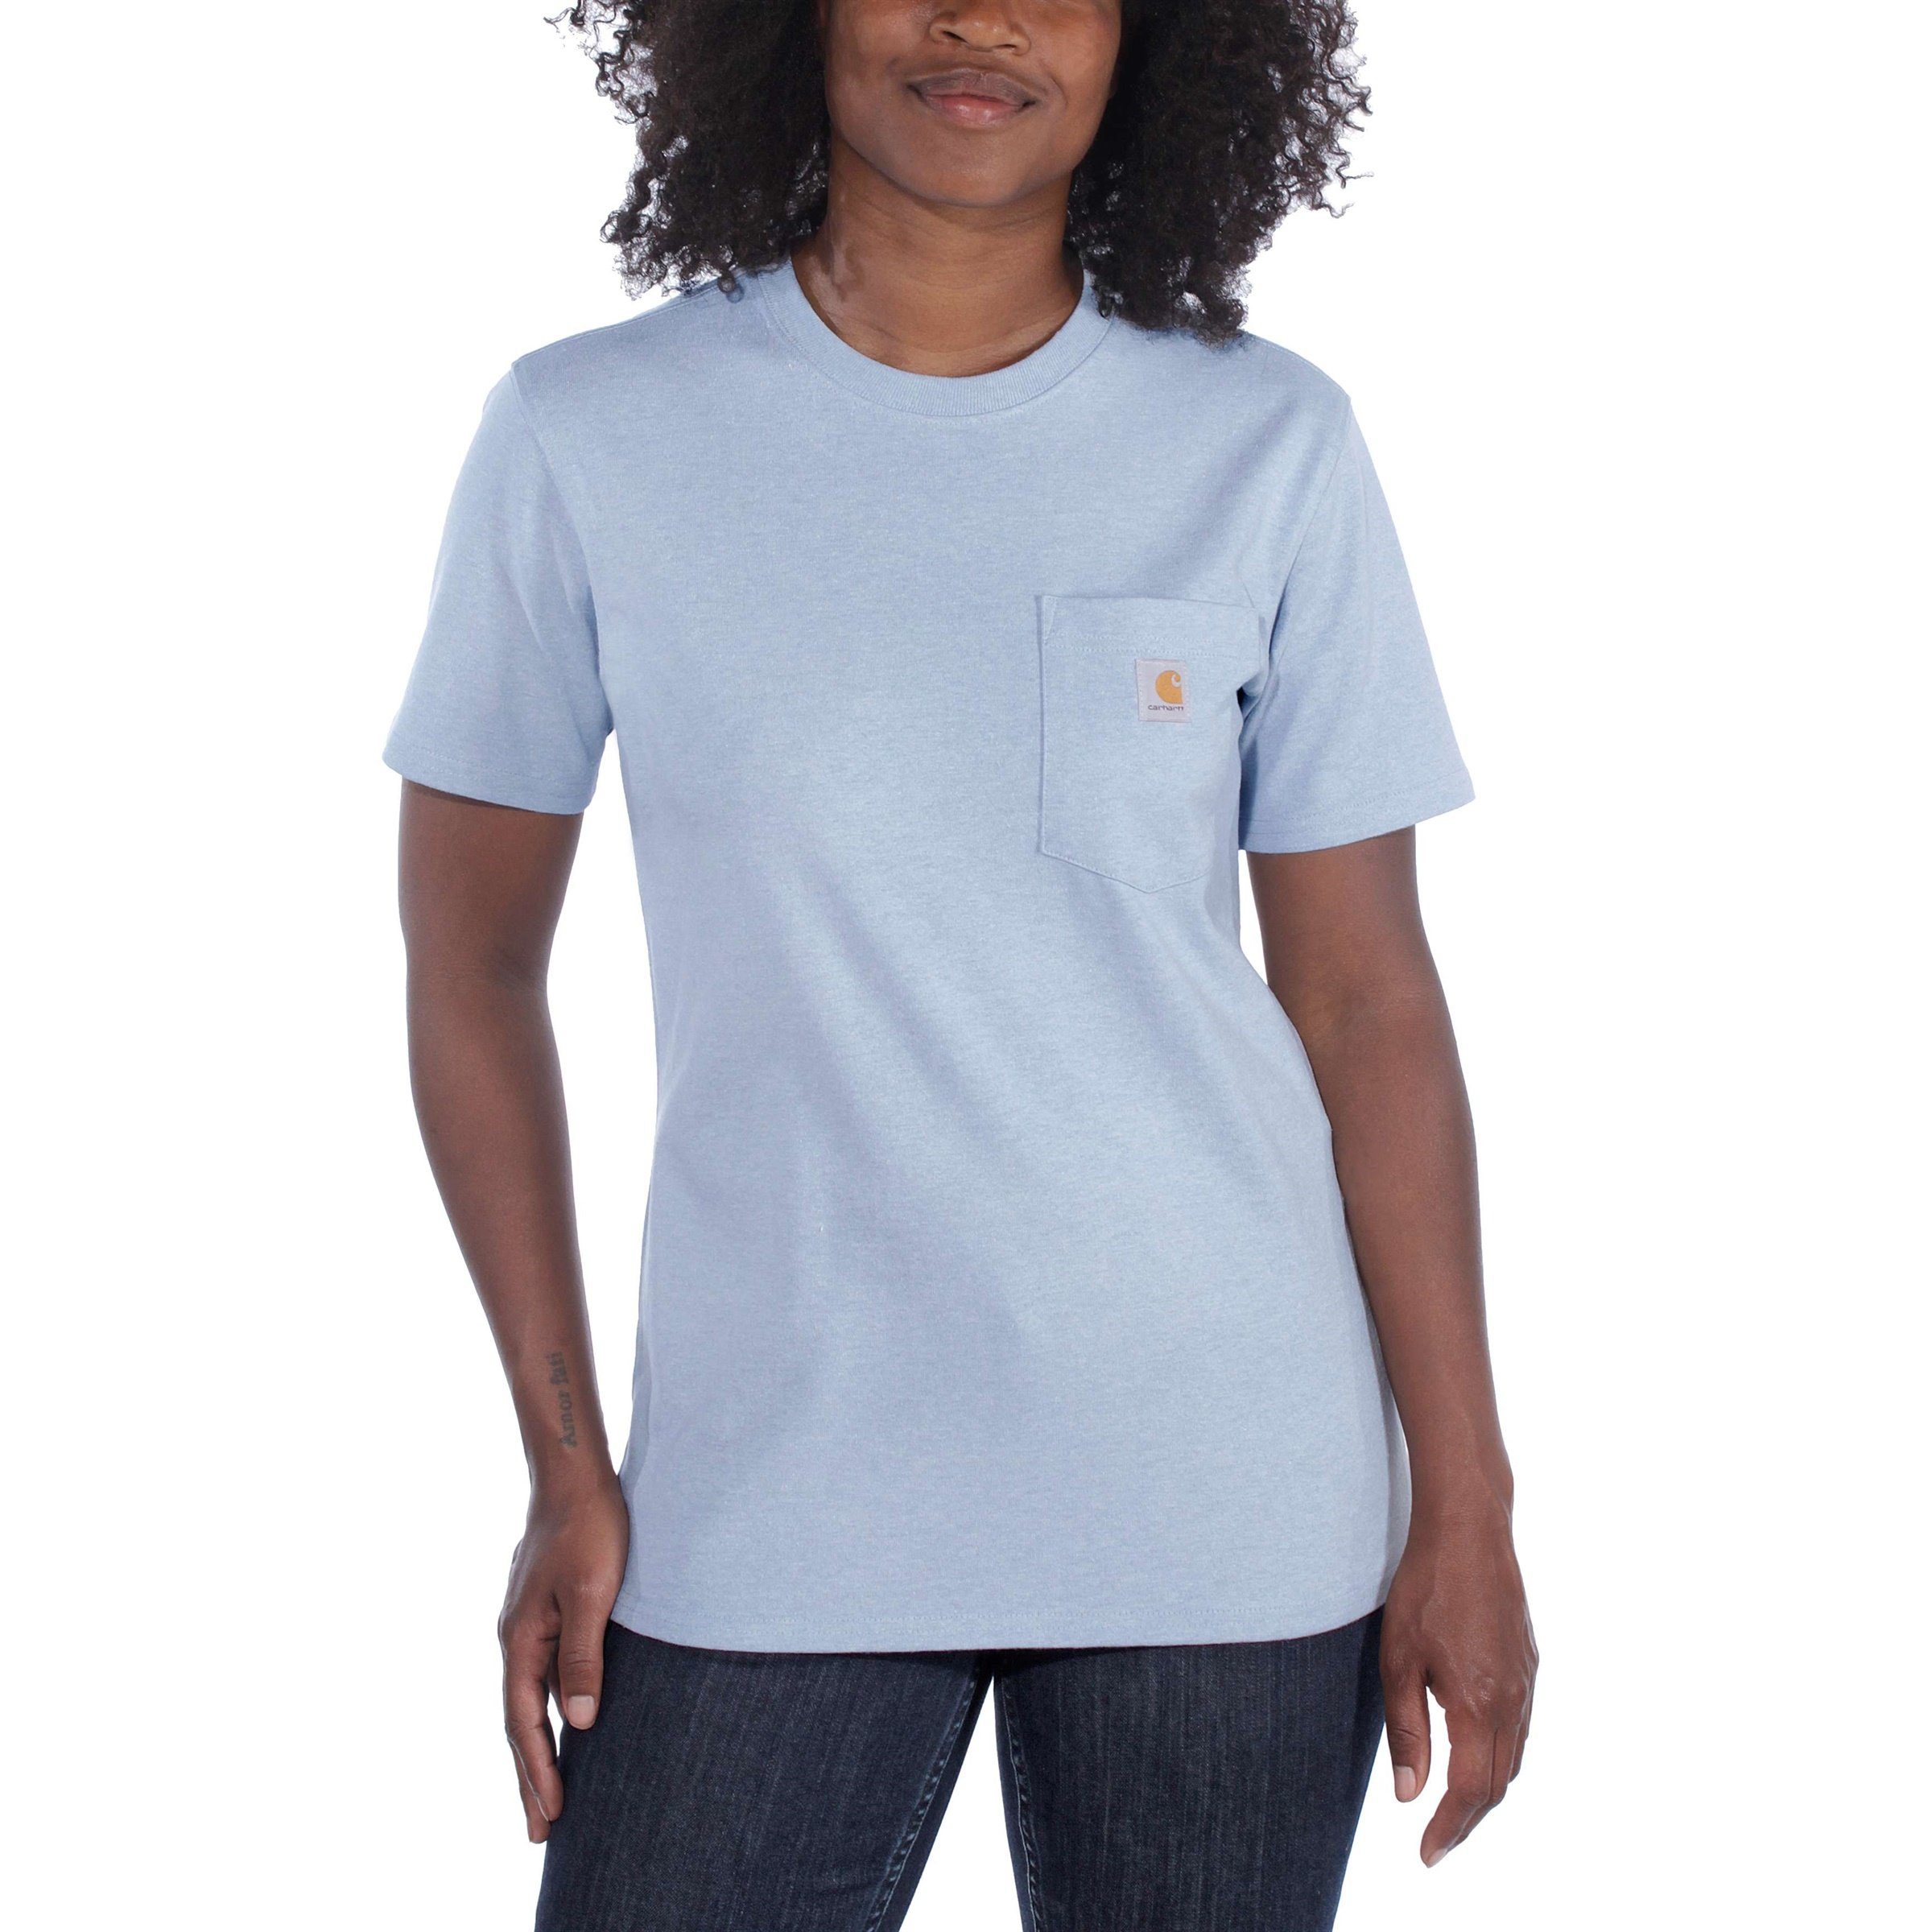 Carhartt Heavyweight T-Shirt Pocket Carhartt Adult T-Shirt Fit jade heather Damen Short-Sleeve Loose